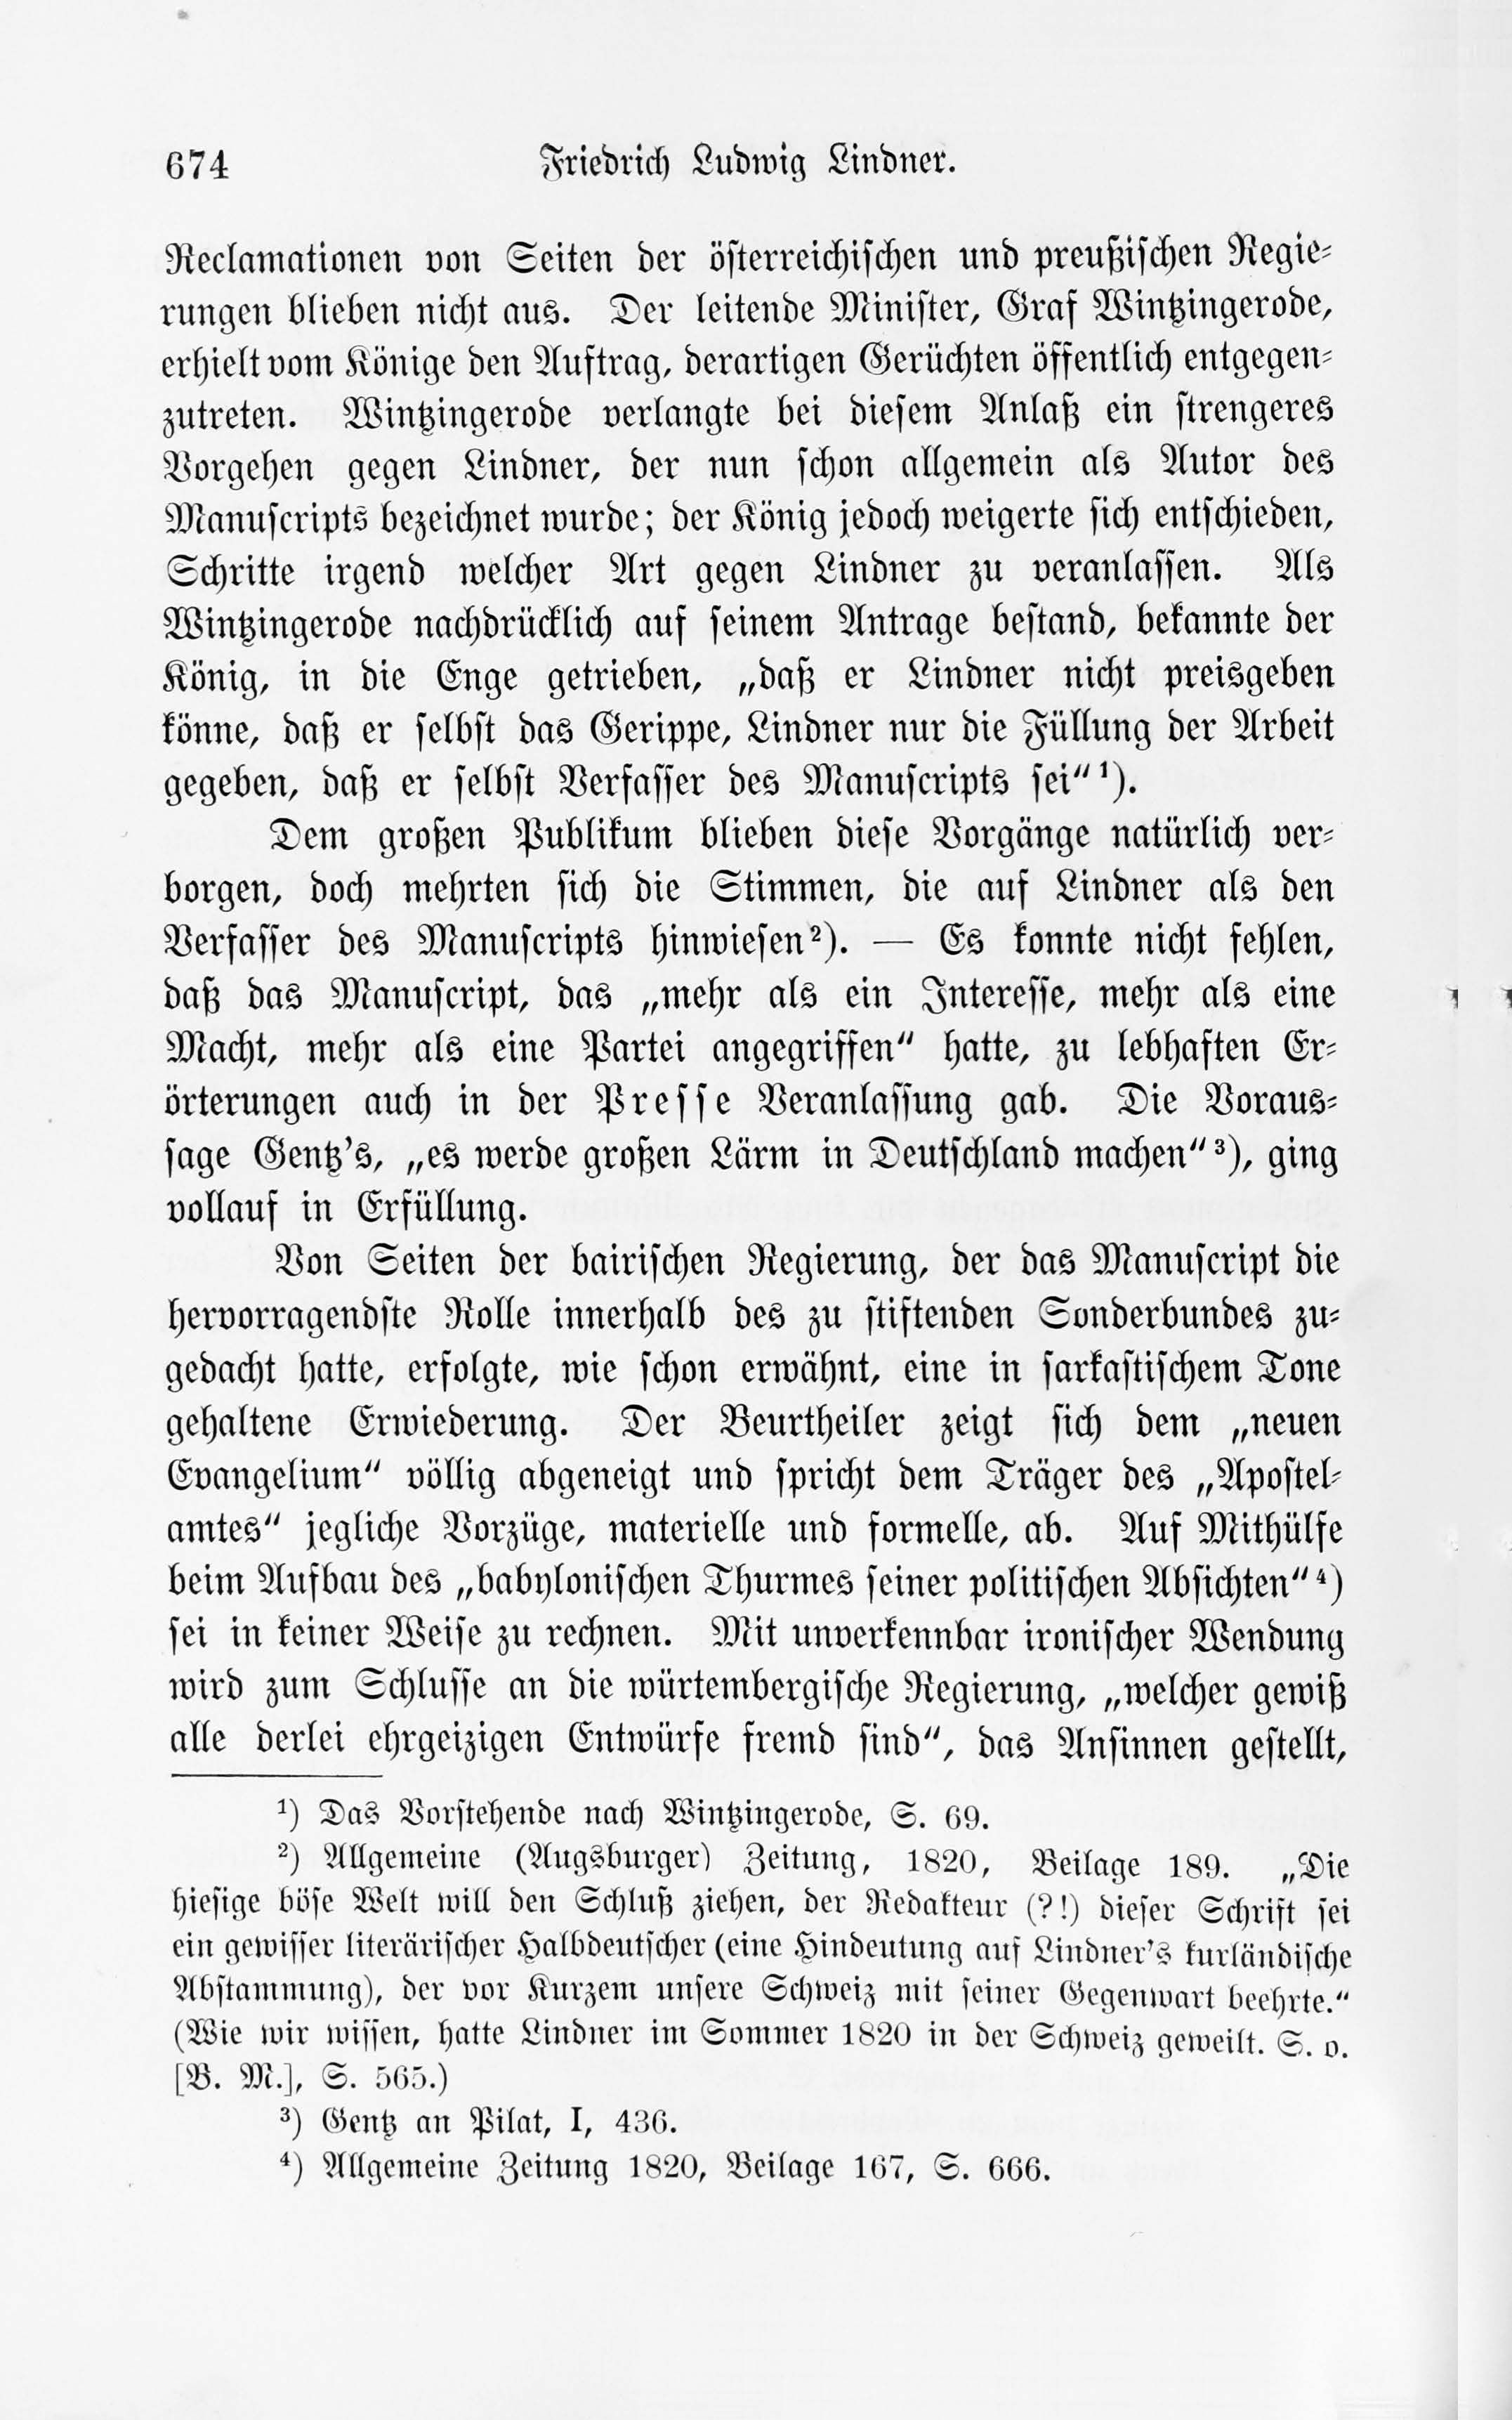 Leben und Schriften des Kurländers Friedrich Ludwig Lindner [2] (1895) | 4. Main body of text